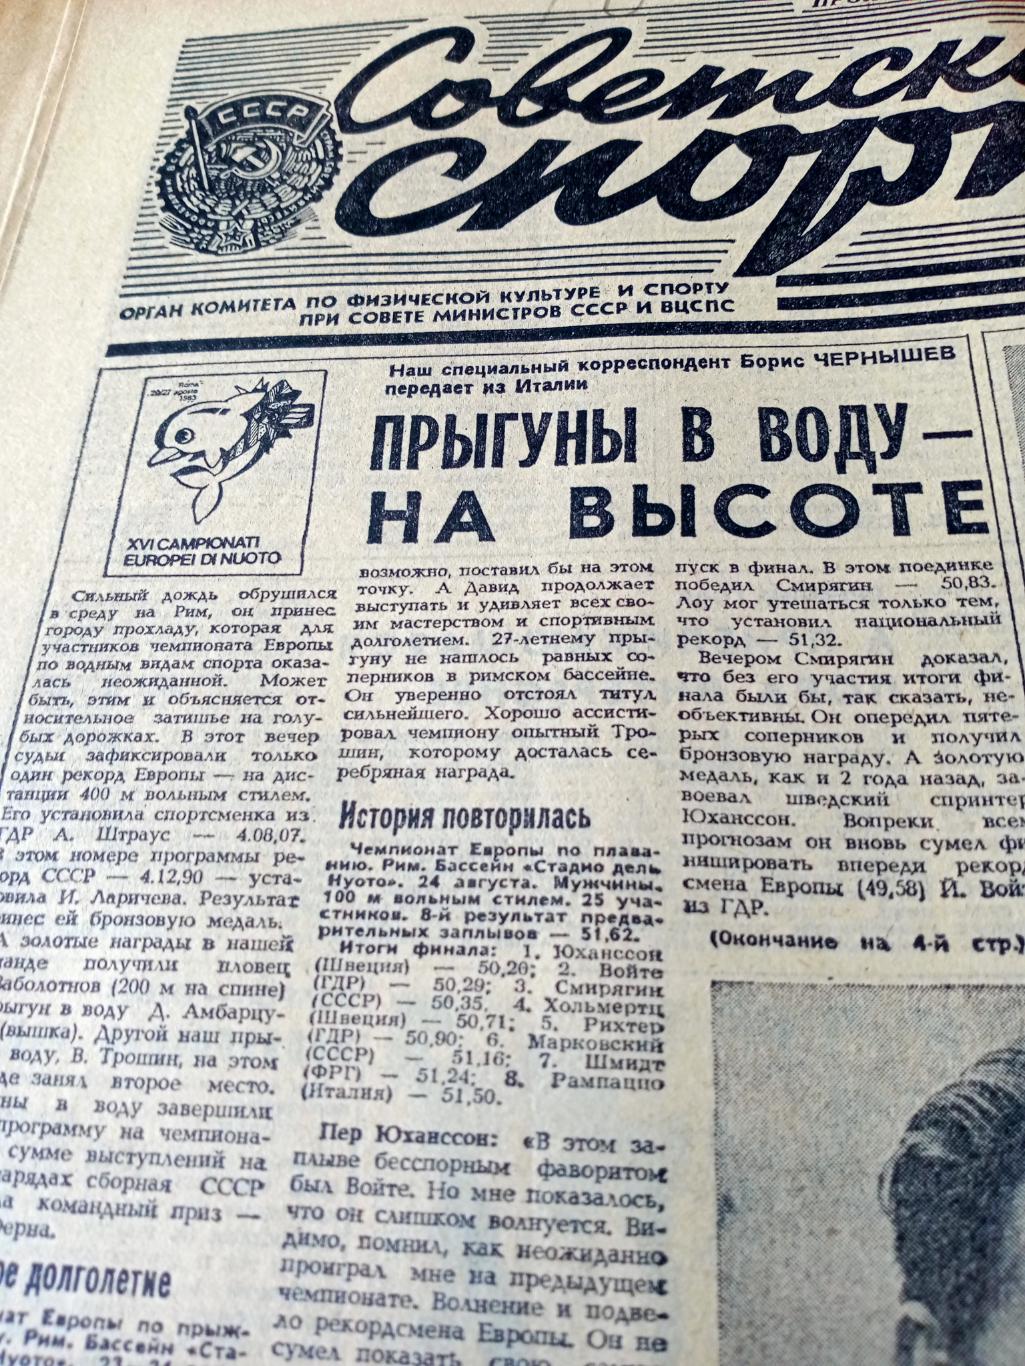 Футбольный выпуск. Советский спорт. 1983 год. 26 августа